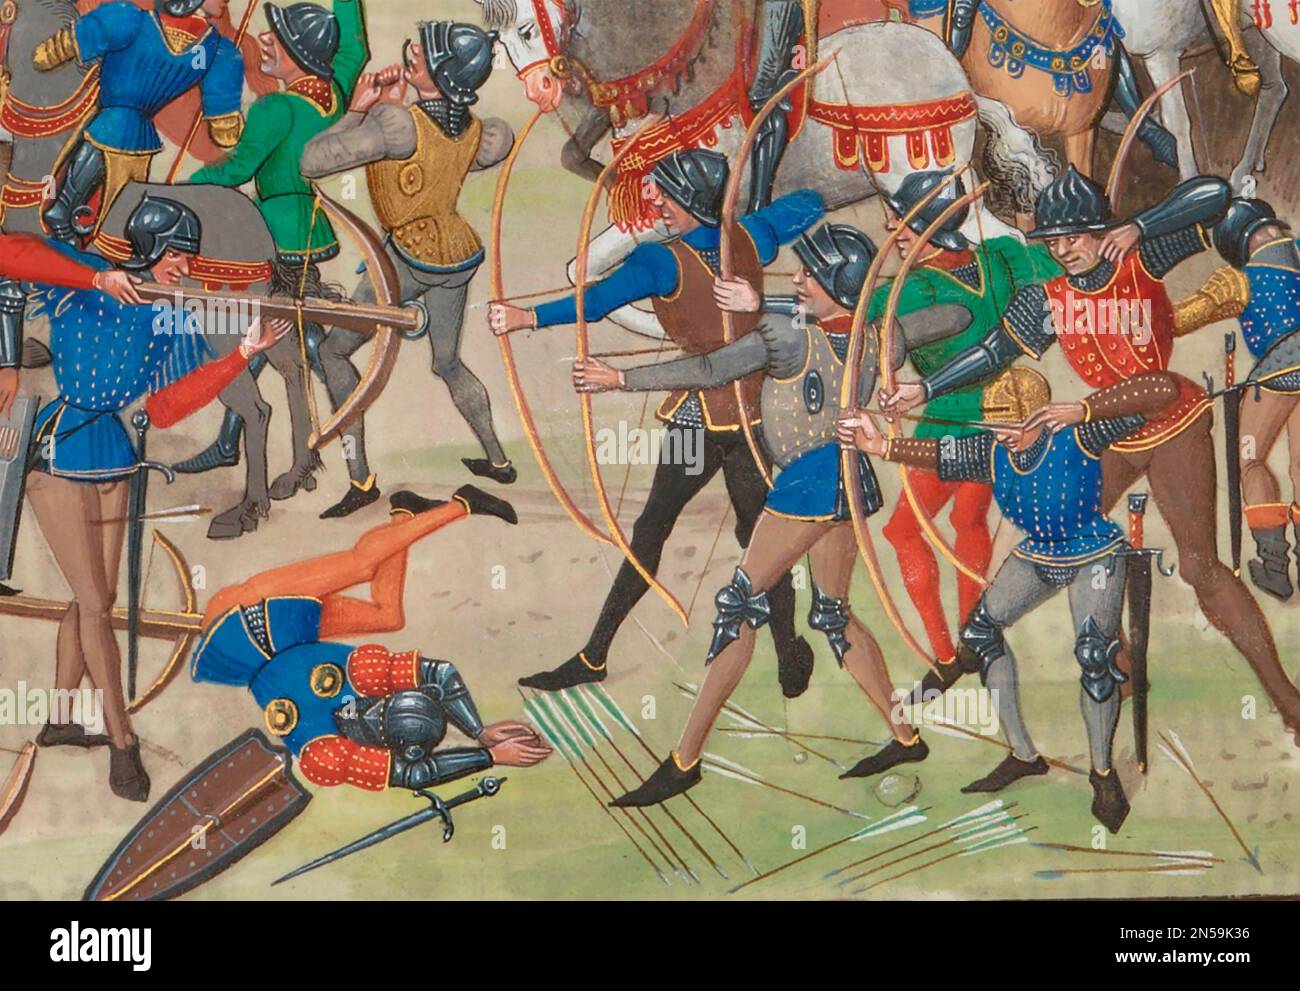 BATTAGLIA DI CRECY 26 agosto 1346 come mostrato in 'Cronache' di Jean Froissart Un dettaglio che mostra l'inglese utilizzando longbow contro i francesi con balestre. Foto Stock